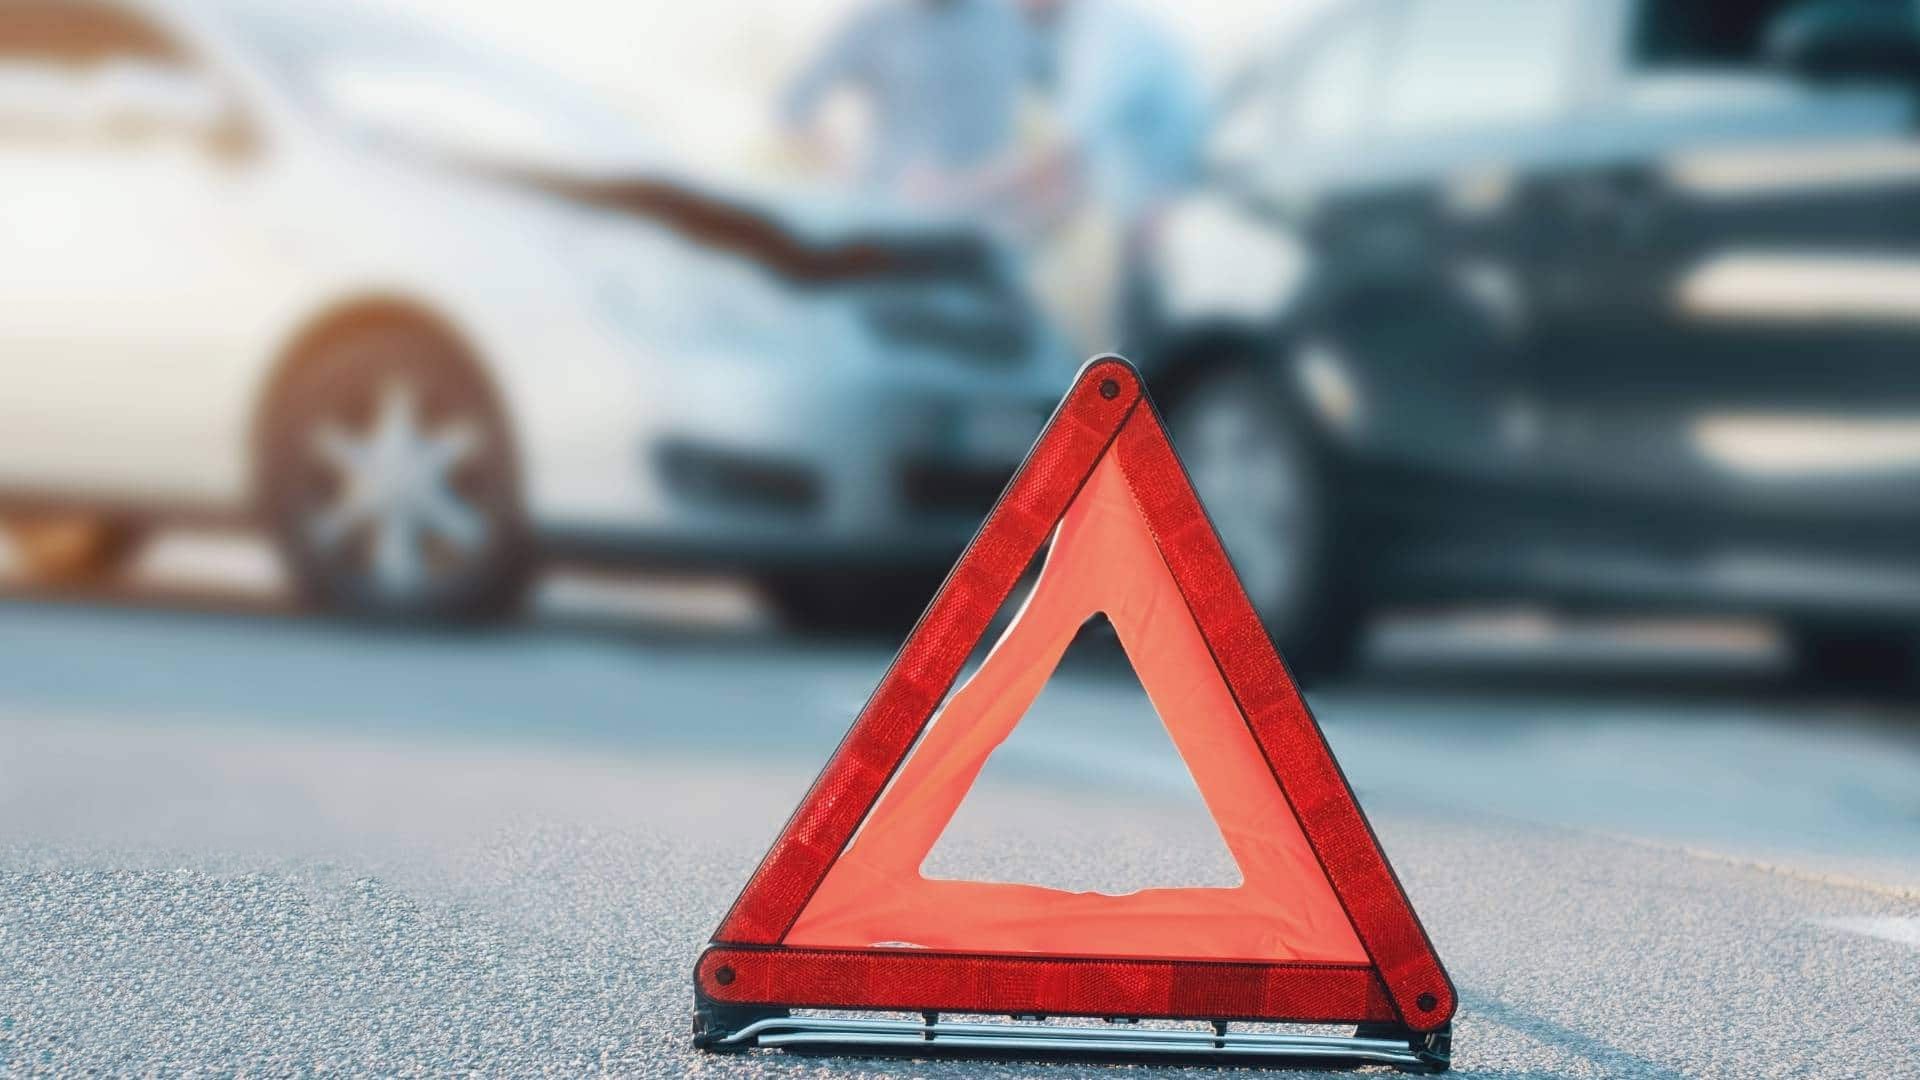 Αυτοκίνητο με Leasing και ατύχημα: Τι πρέπει να κάνω;